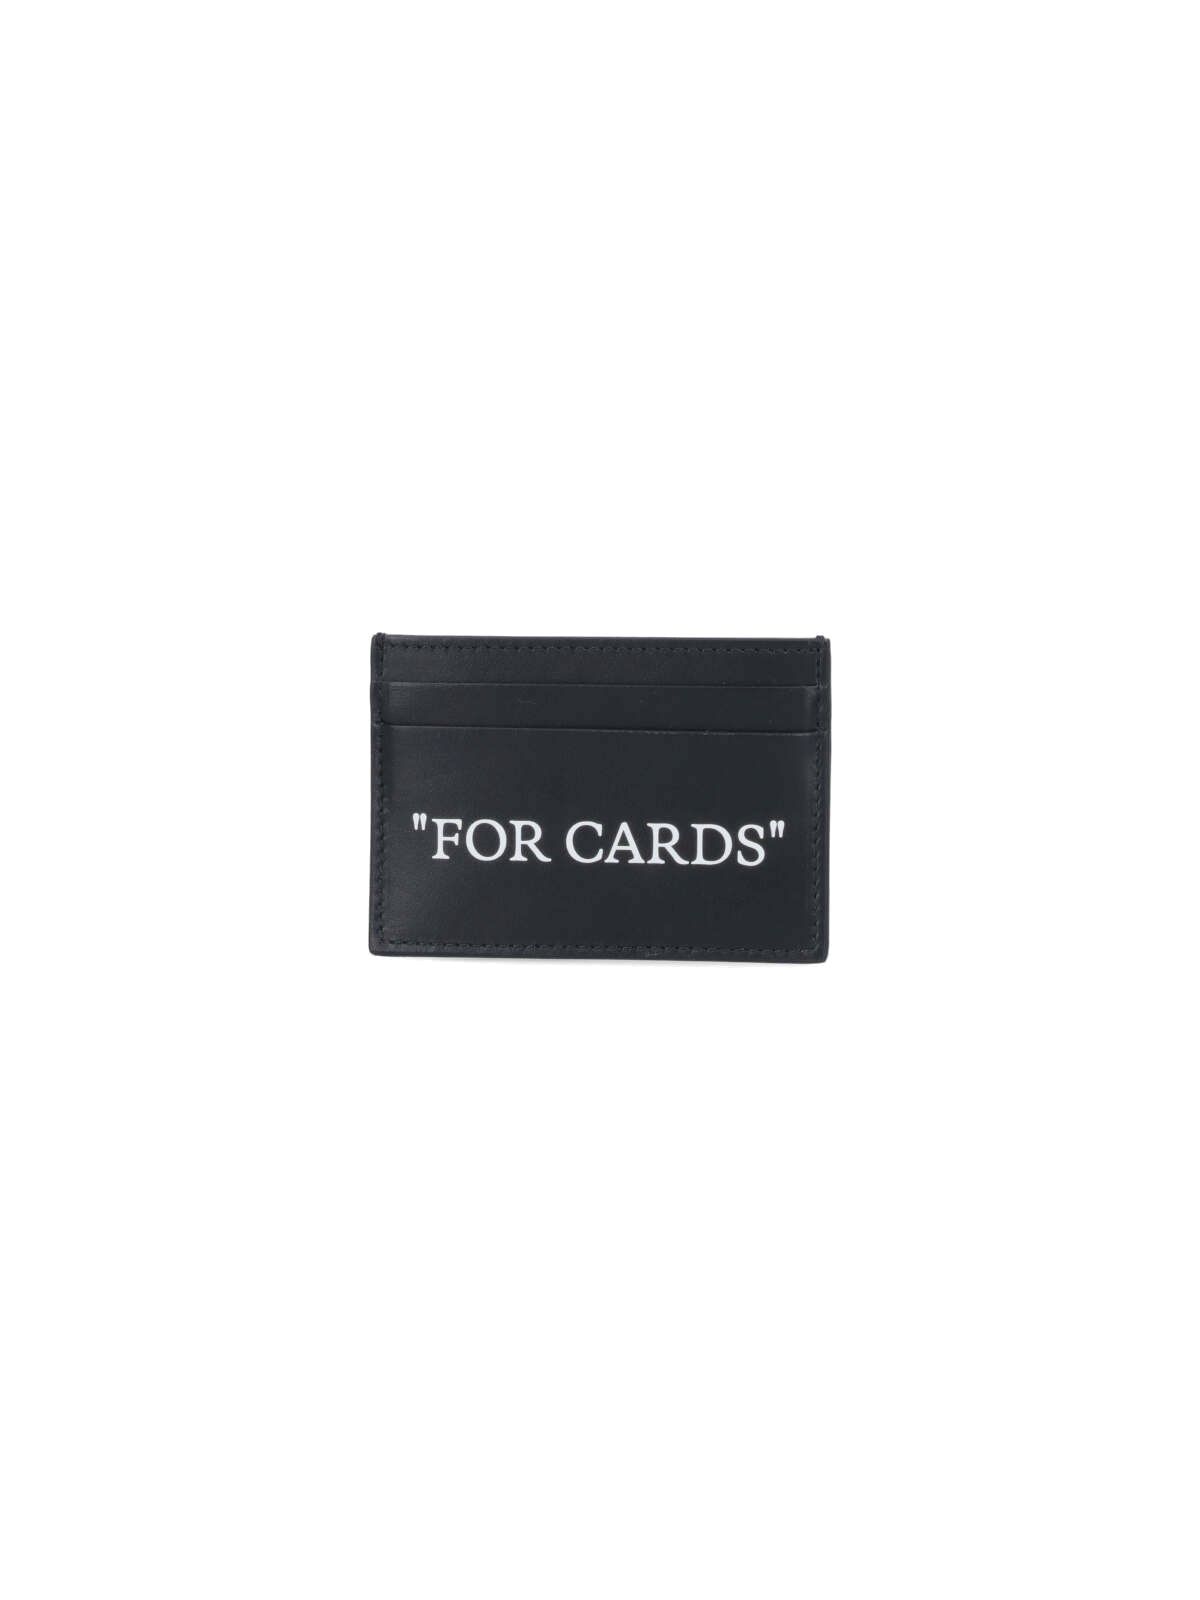 Portacarte logo "For Cards"